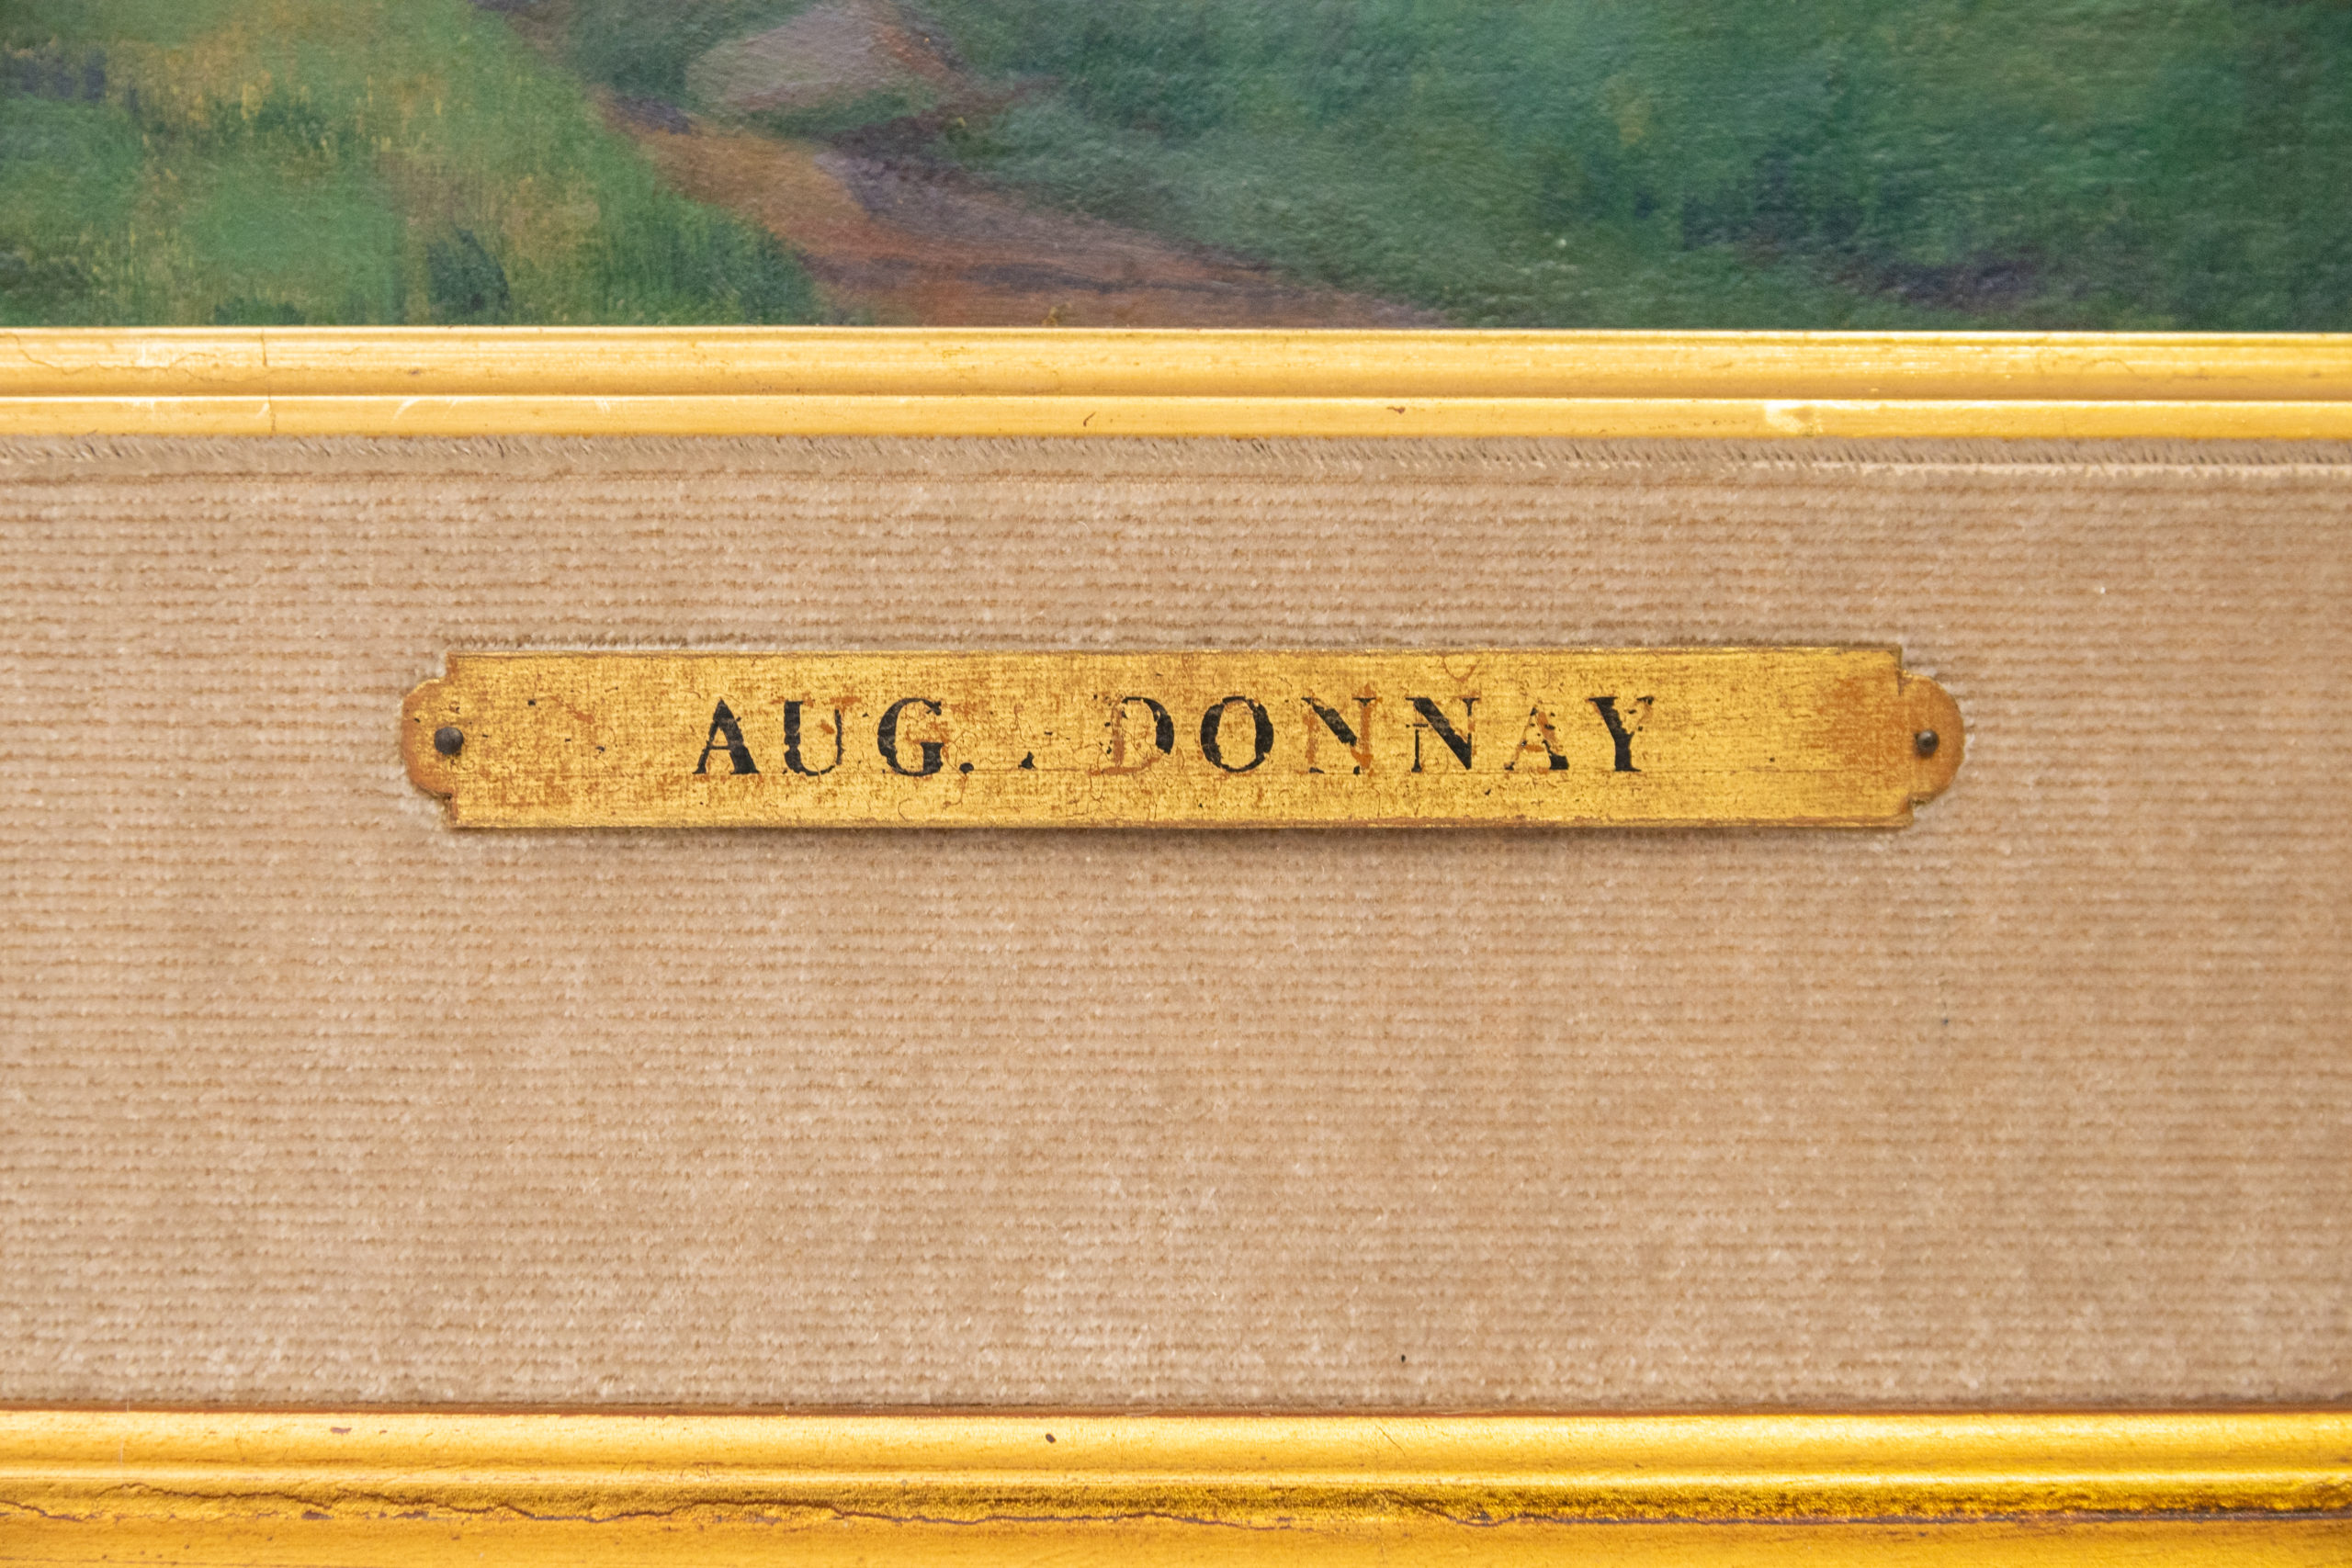 Auguste-Donnay-liège-peinture-sur-toile-aurore-Morisse-chestret5-antiquaire-liège-affaire-conclue3